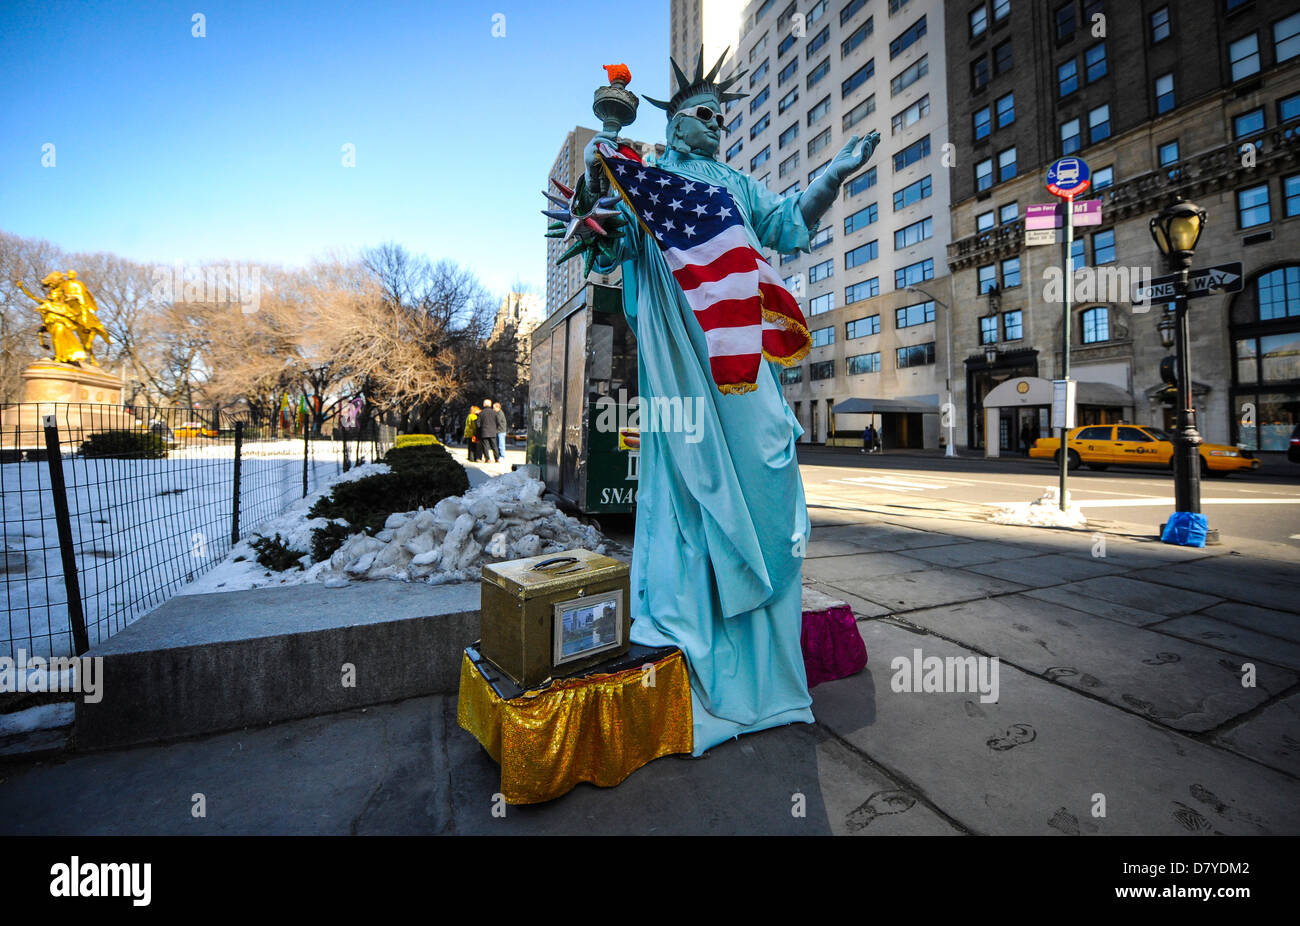 A Street Performer gekleidet wie die Statue of Liberty, in der Nähe von Central Park in New York City. Stockfoto